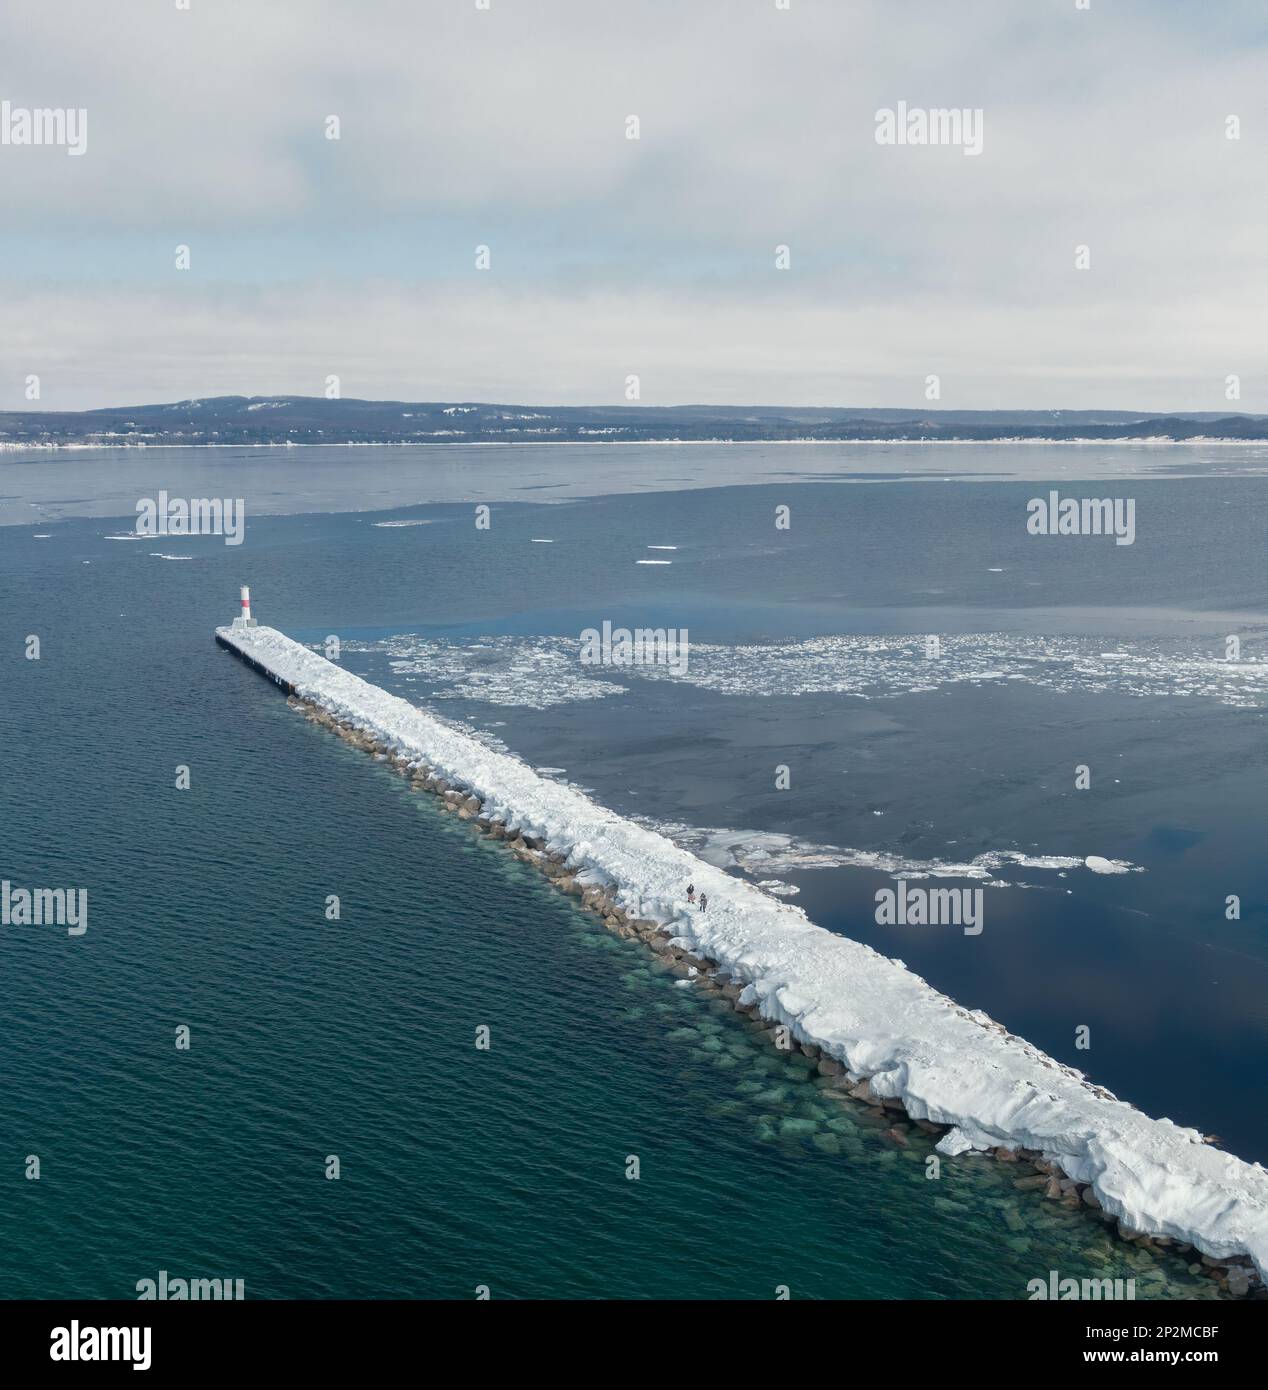 Vista aerea della breakwall marina in inverno con due persone a piedi Foto Stock